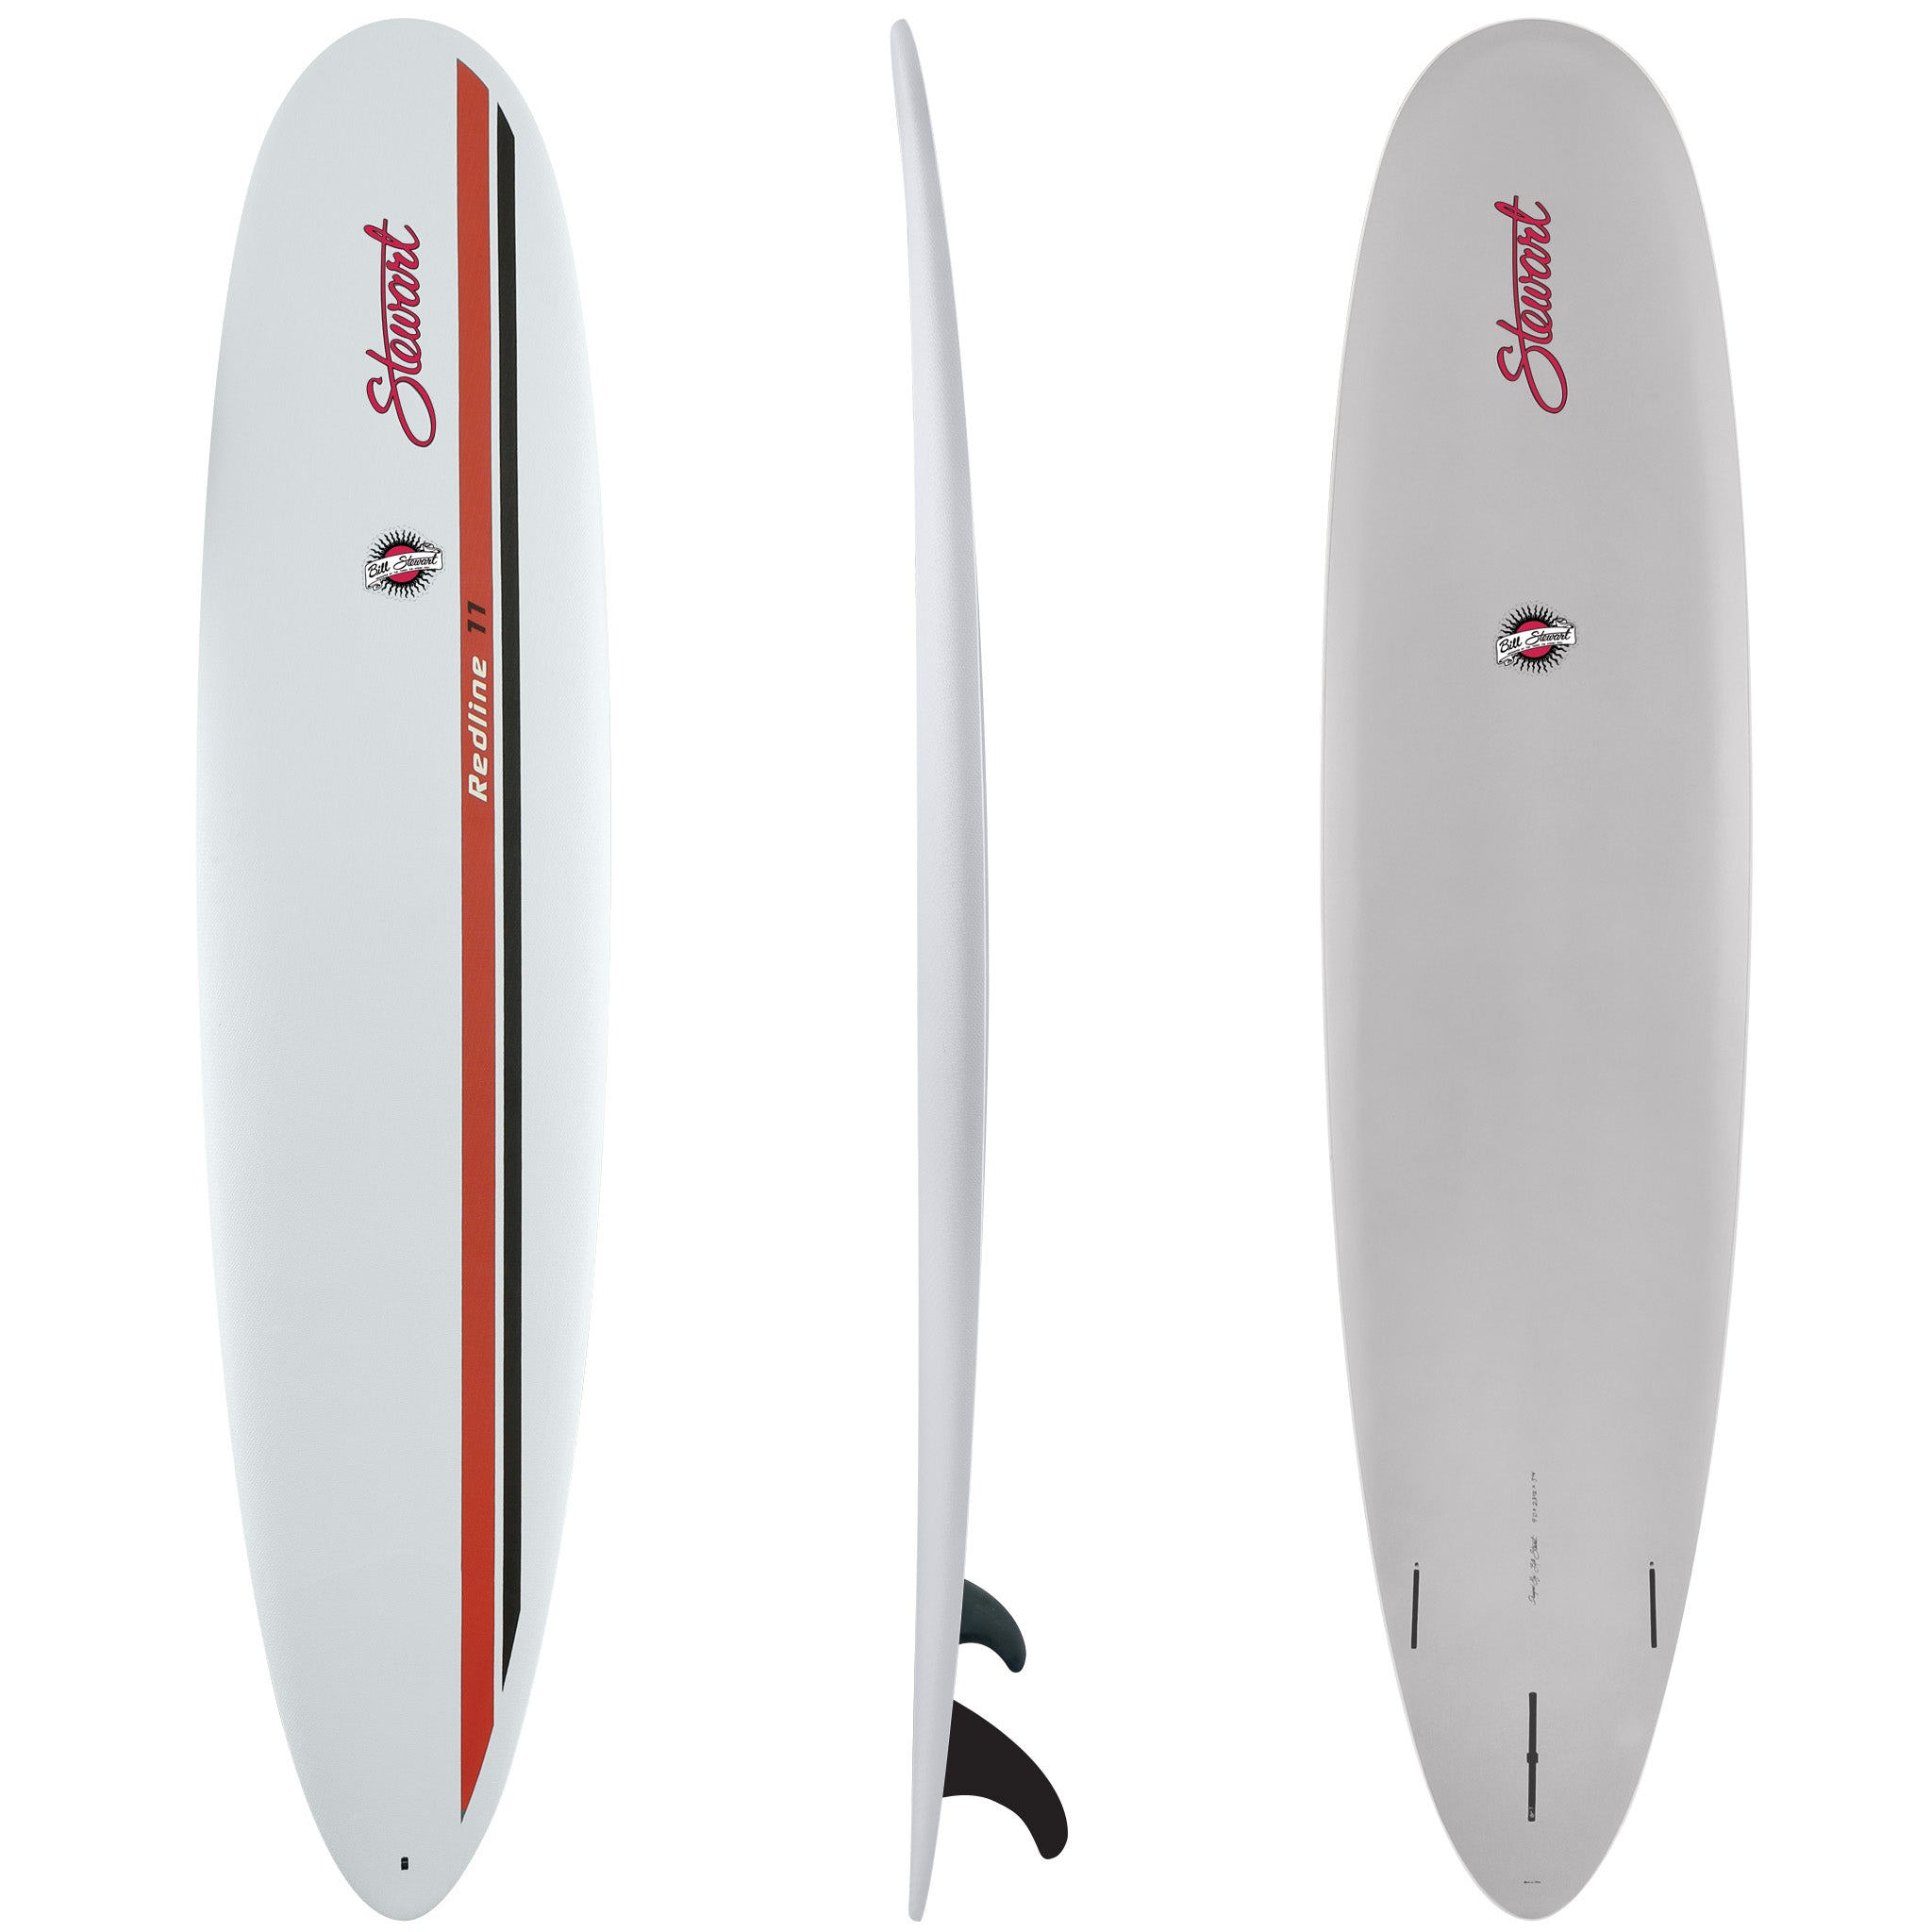 HYDROCUSH HIGH PERFORMANCE SOFT-TOP SURFBOARDS | Stewart Surfboards